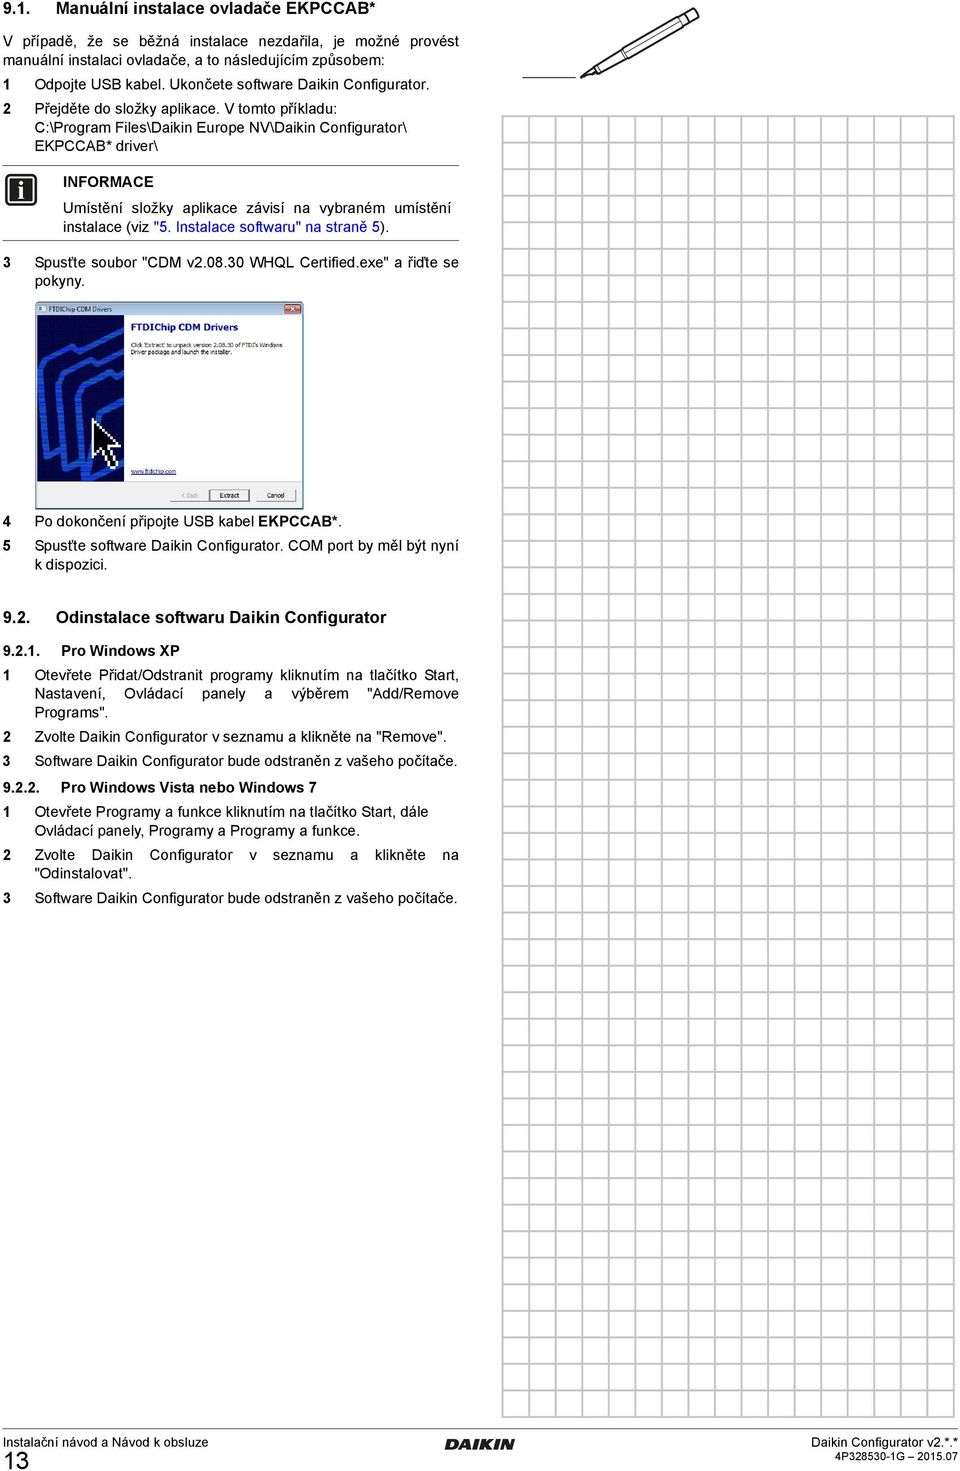 V tomto příkladu: C:\Program Files\Daikin Europe NV\Daikin Configurator\ EKPCCAB* driver\ Umístění složky aplikace závisí na vybraném umístění instalace (viz "5. Instalace softwaru" na straně 5).